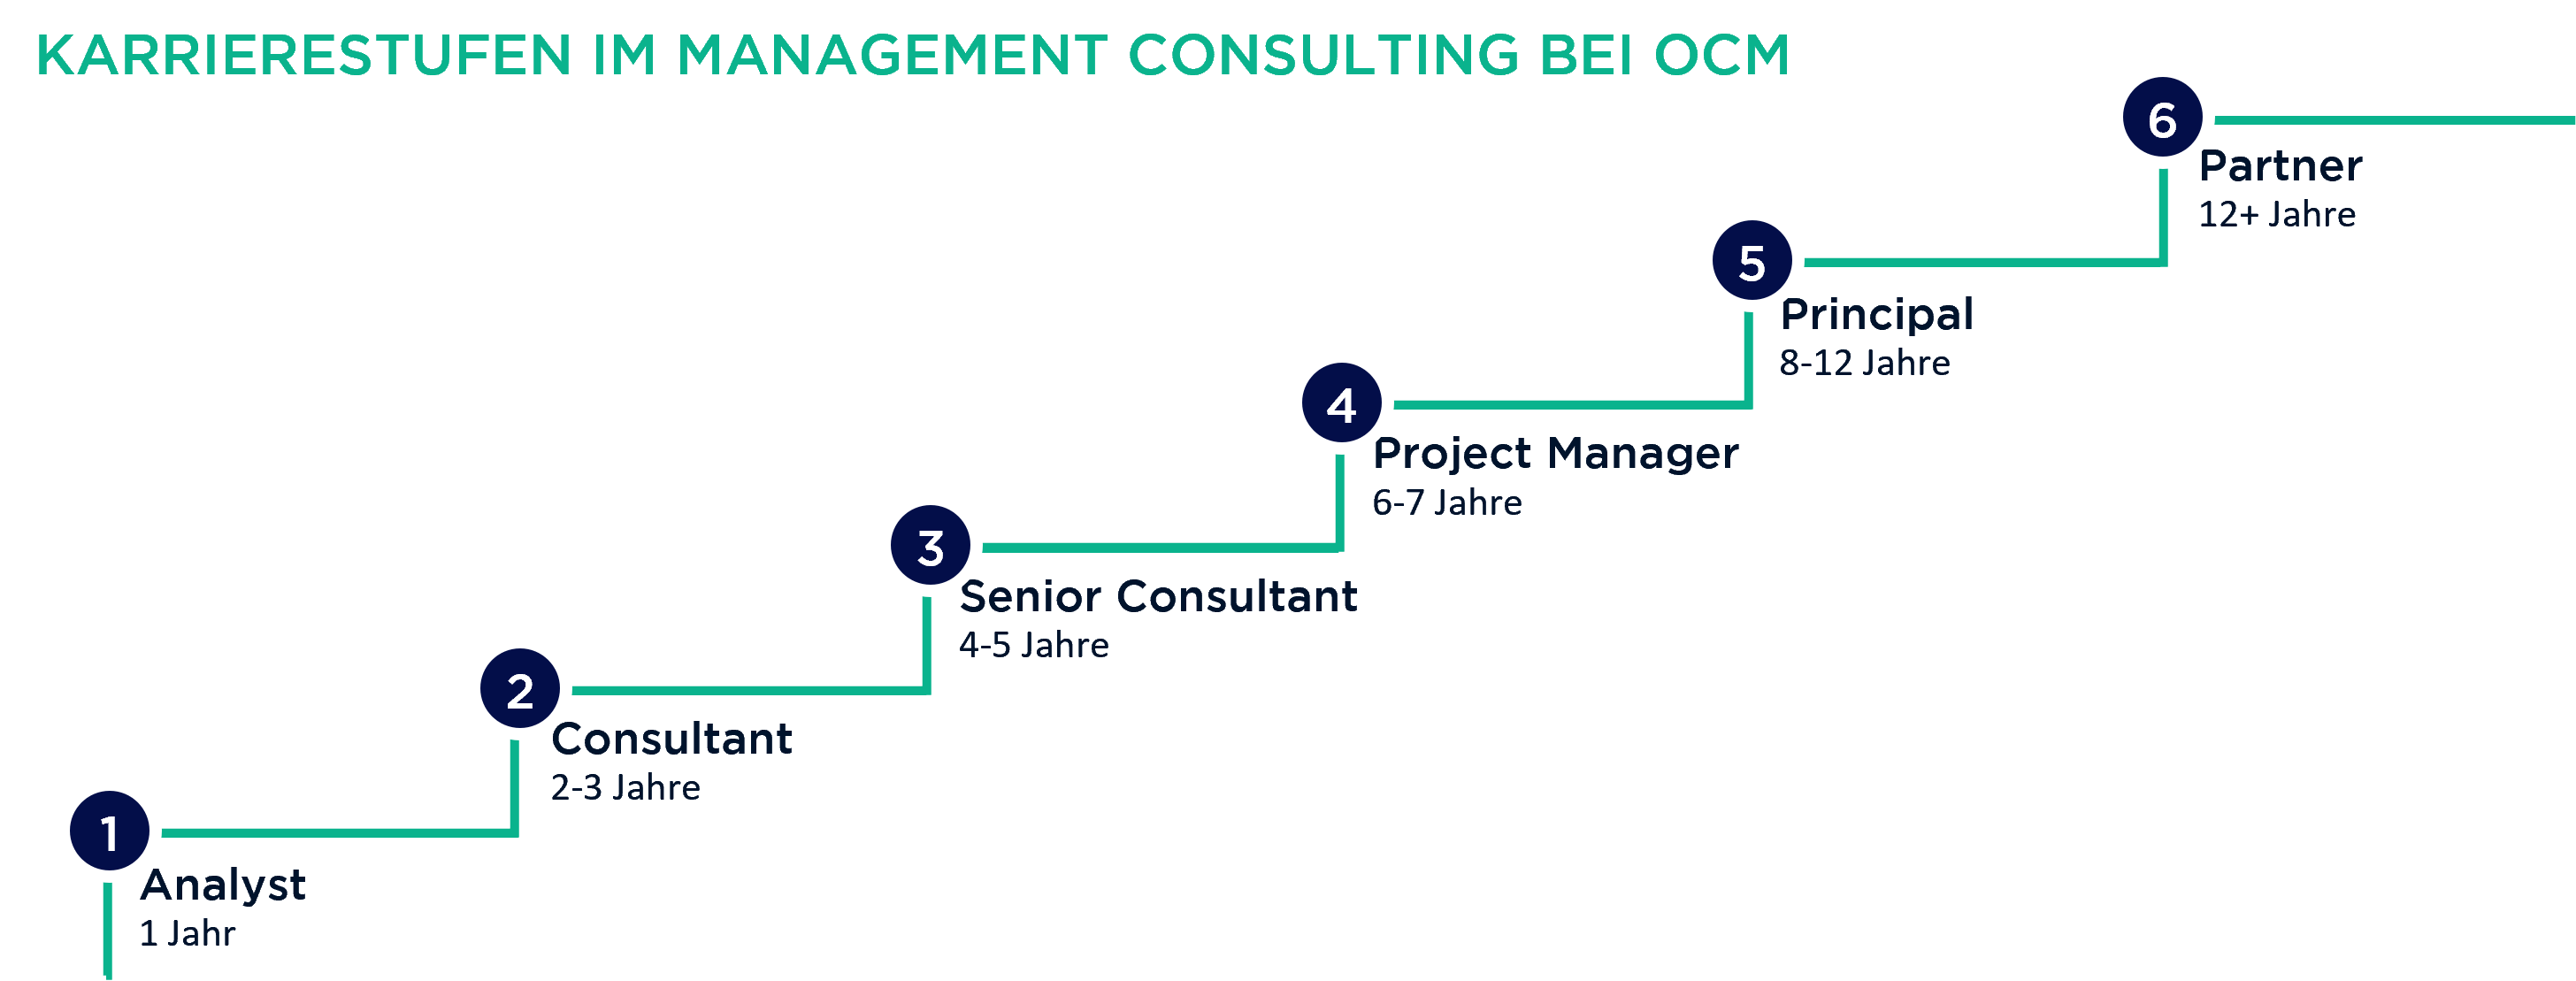 Karrierestufen im Management Consulting bei OCM